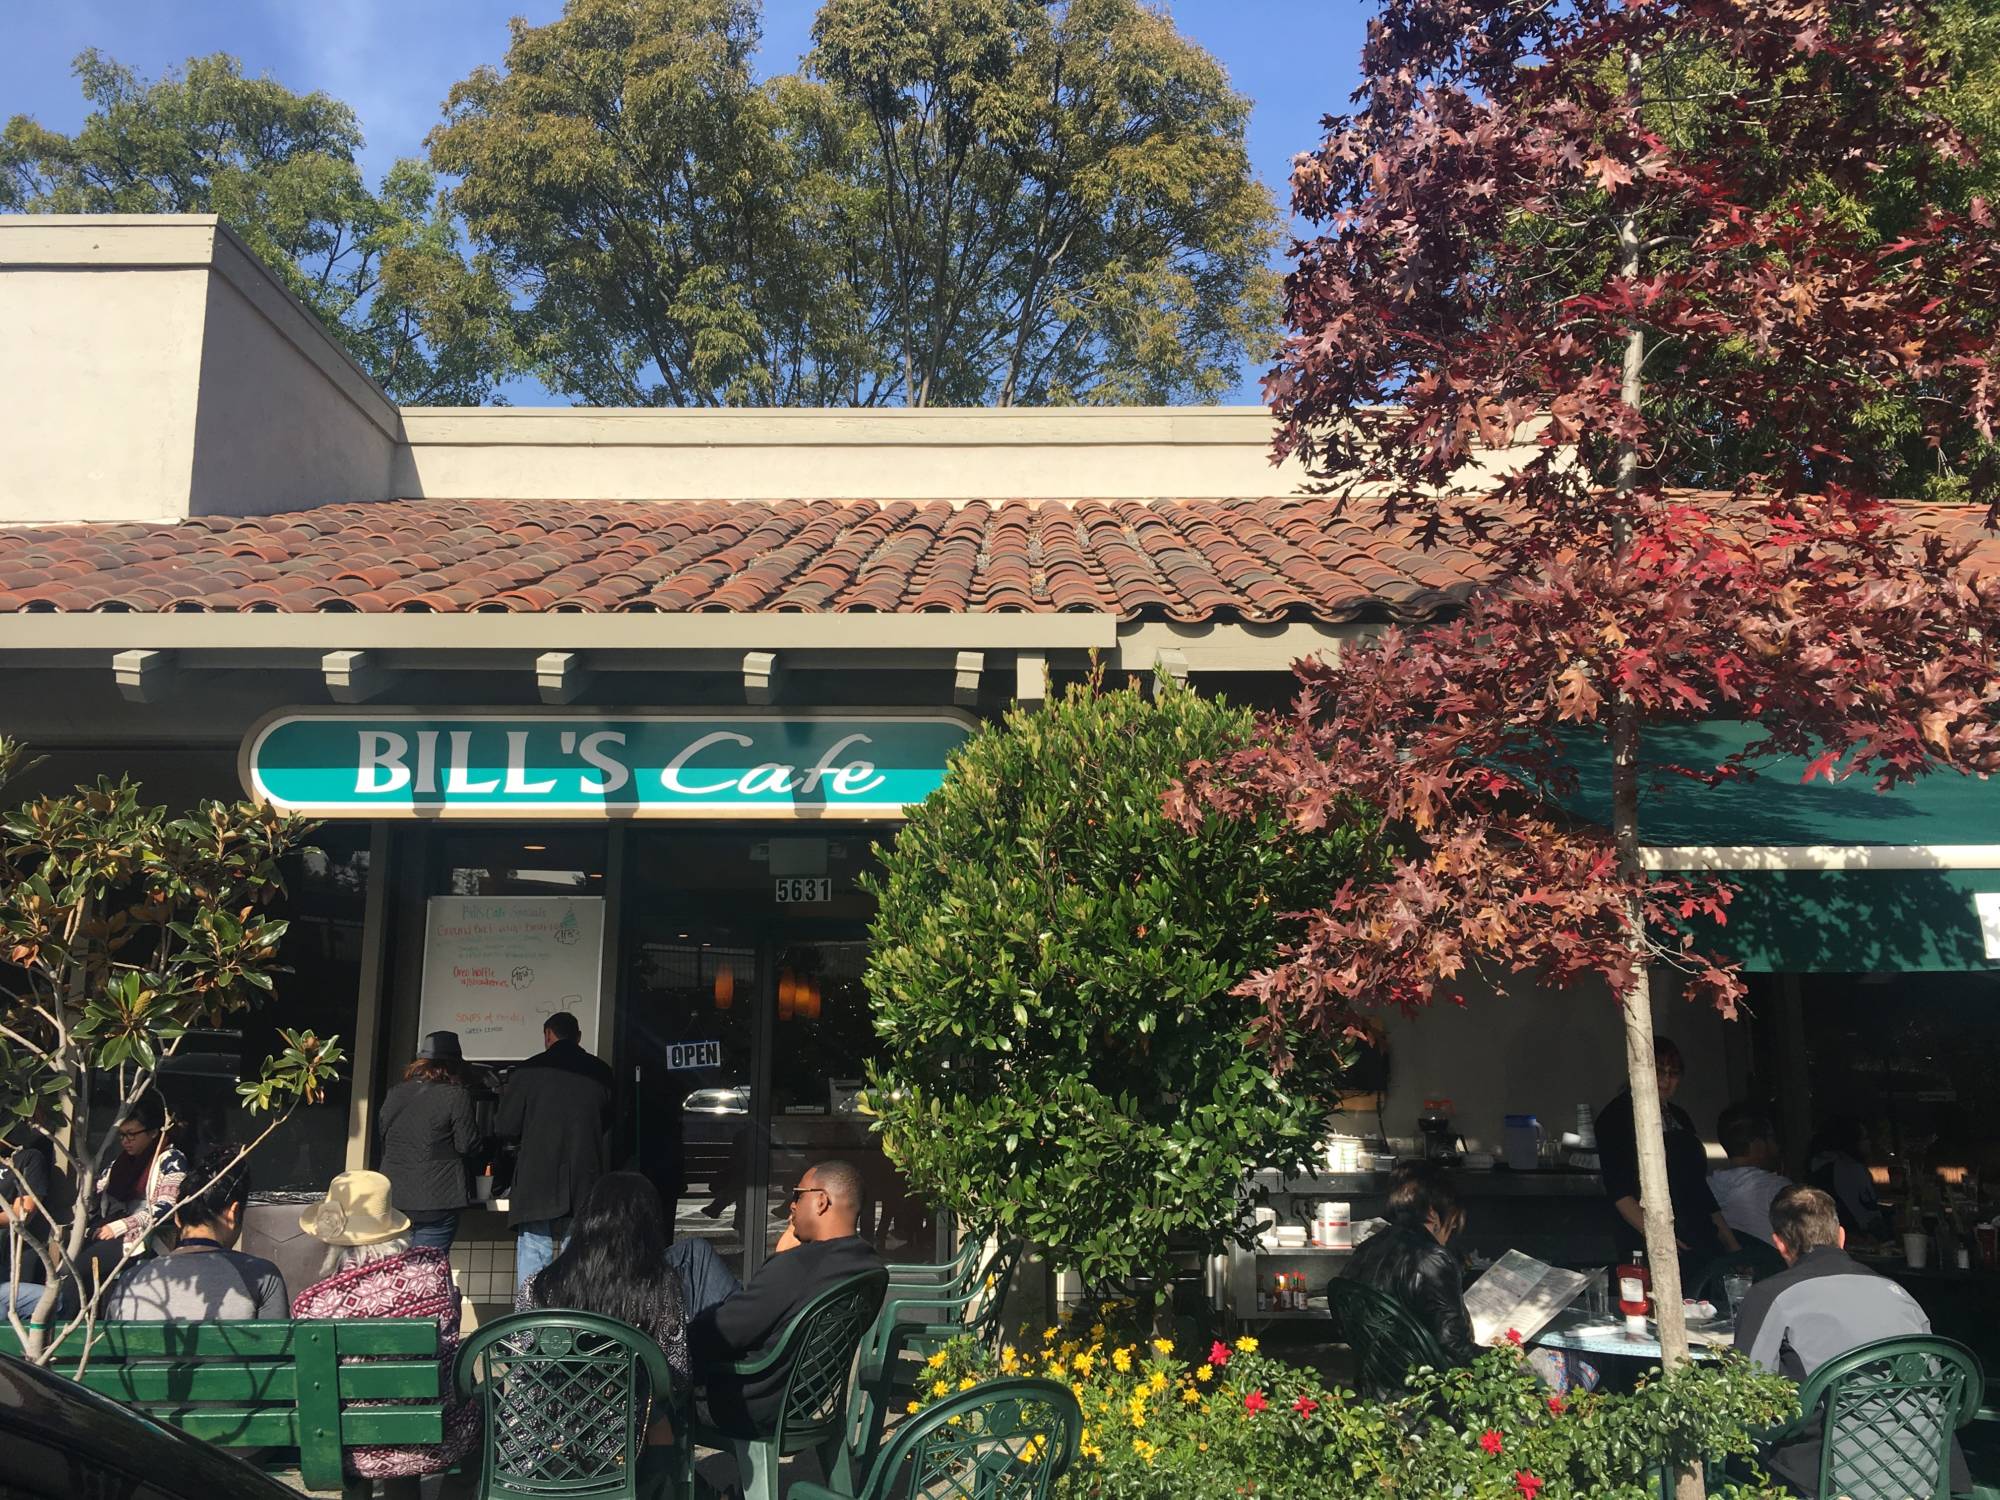 Outside Bill’s Cafe in San Jose.